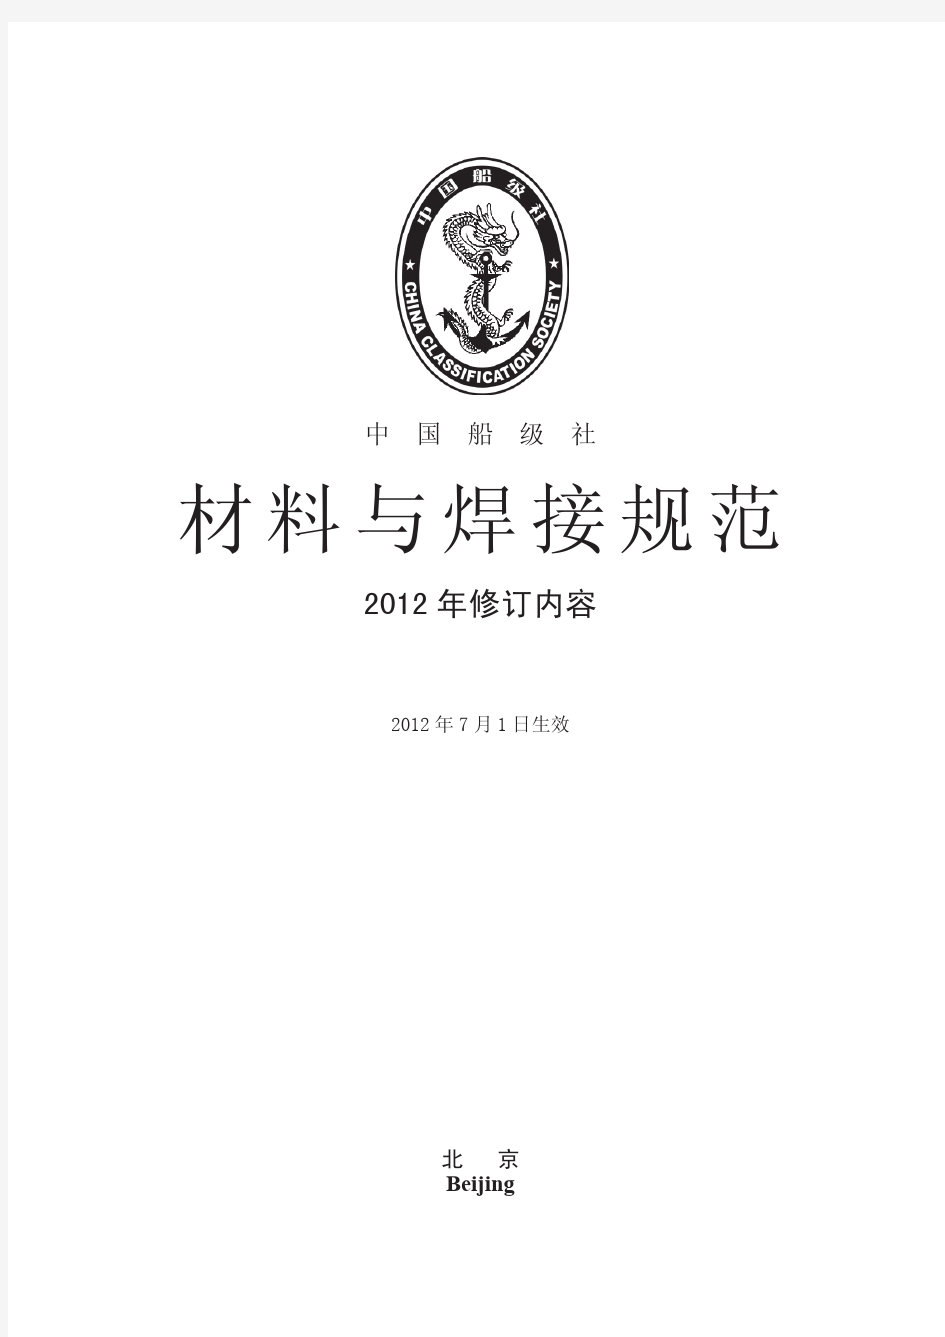 中国船级社(CCS)《材料与焊接规范》2012年修改通